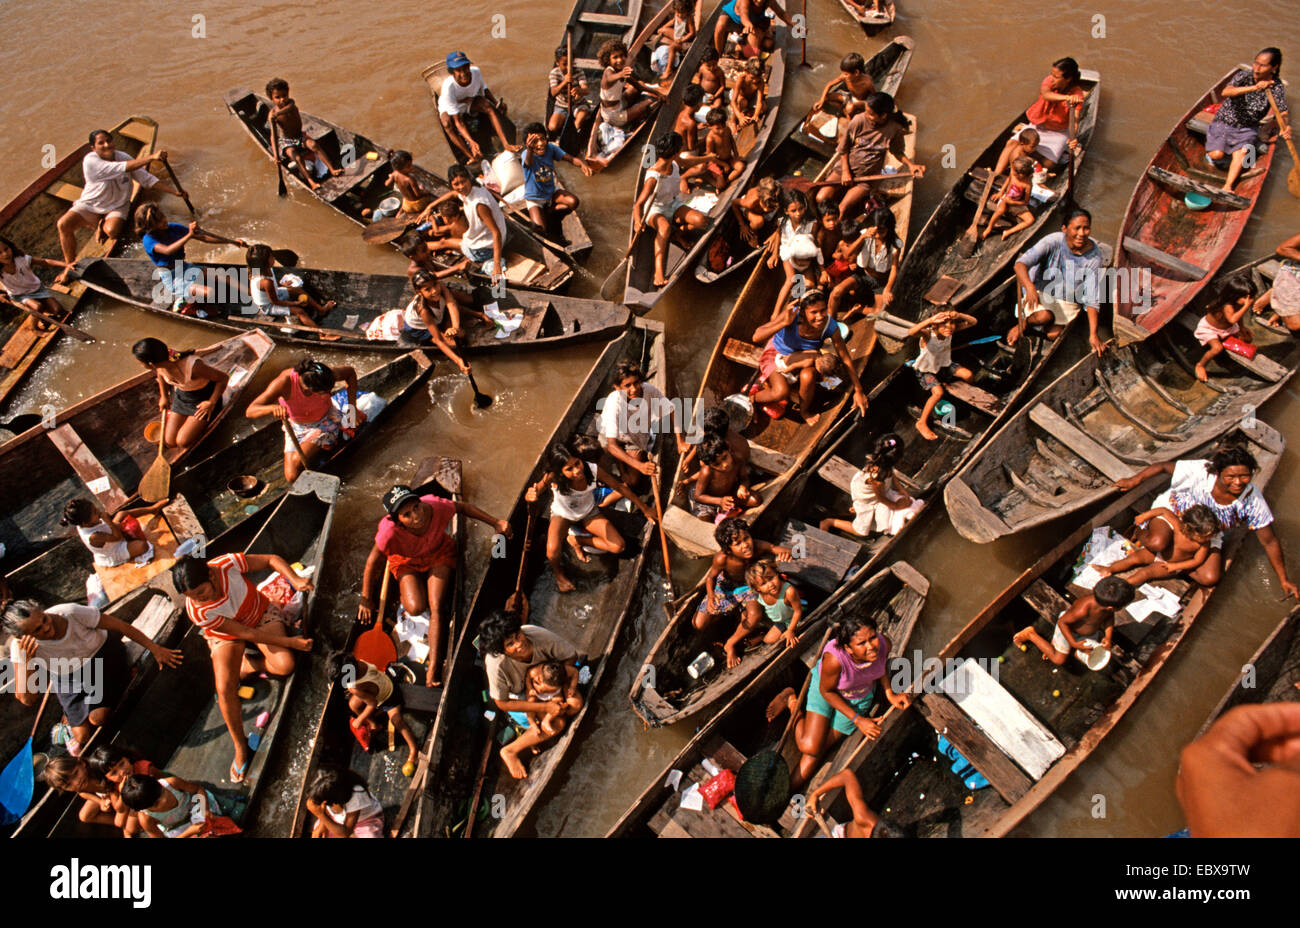 Autochtones dans des bateaux sur l'Amazonas, Brésil Banque D'Images